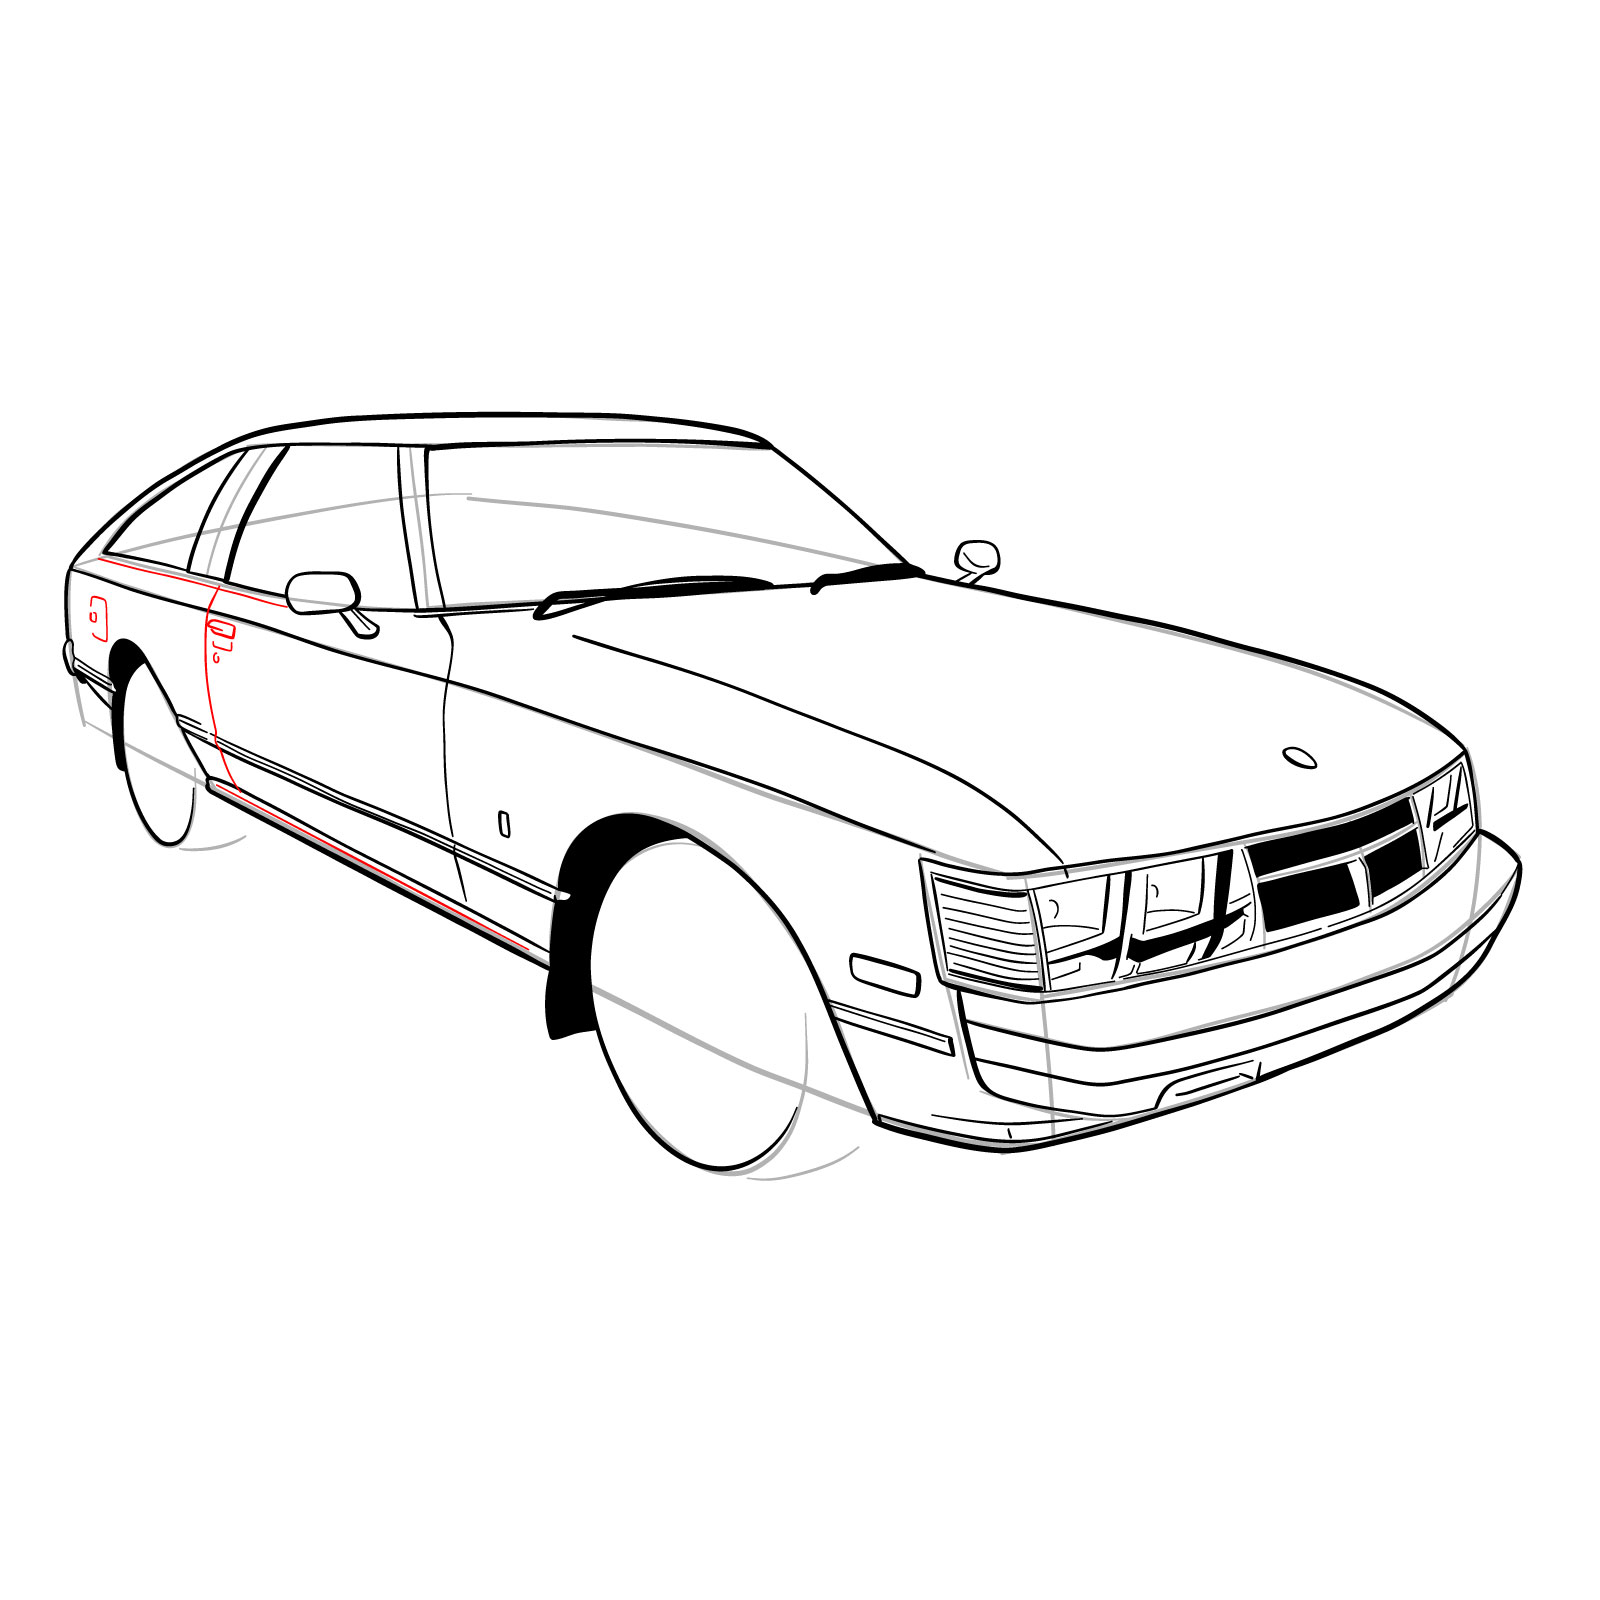 How to draw a 1979 Toyota Celica Supra Mk I Coupe - step 26